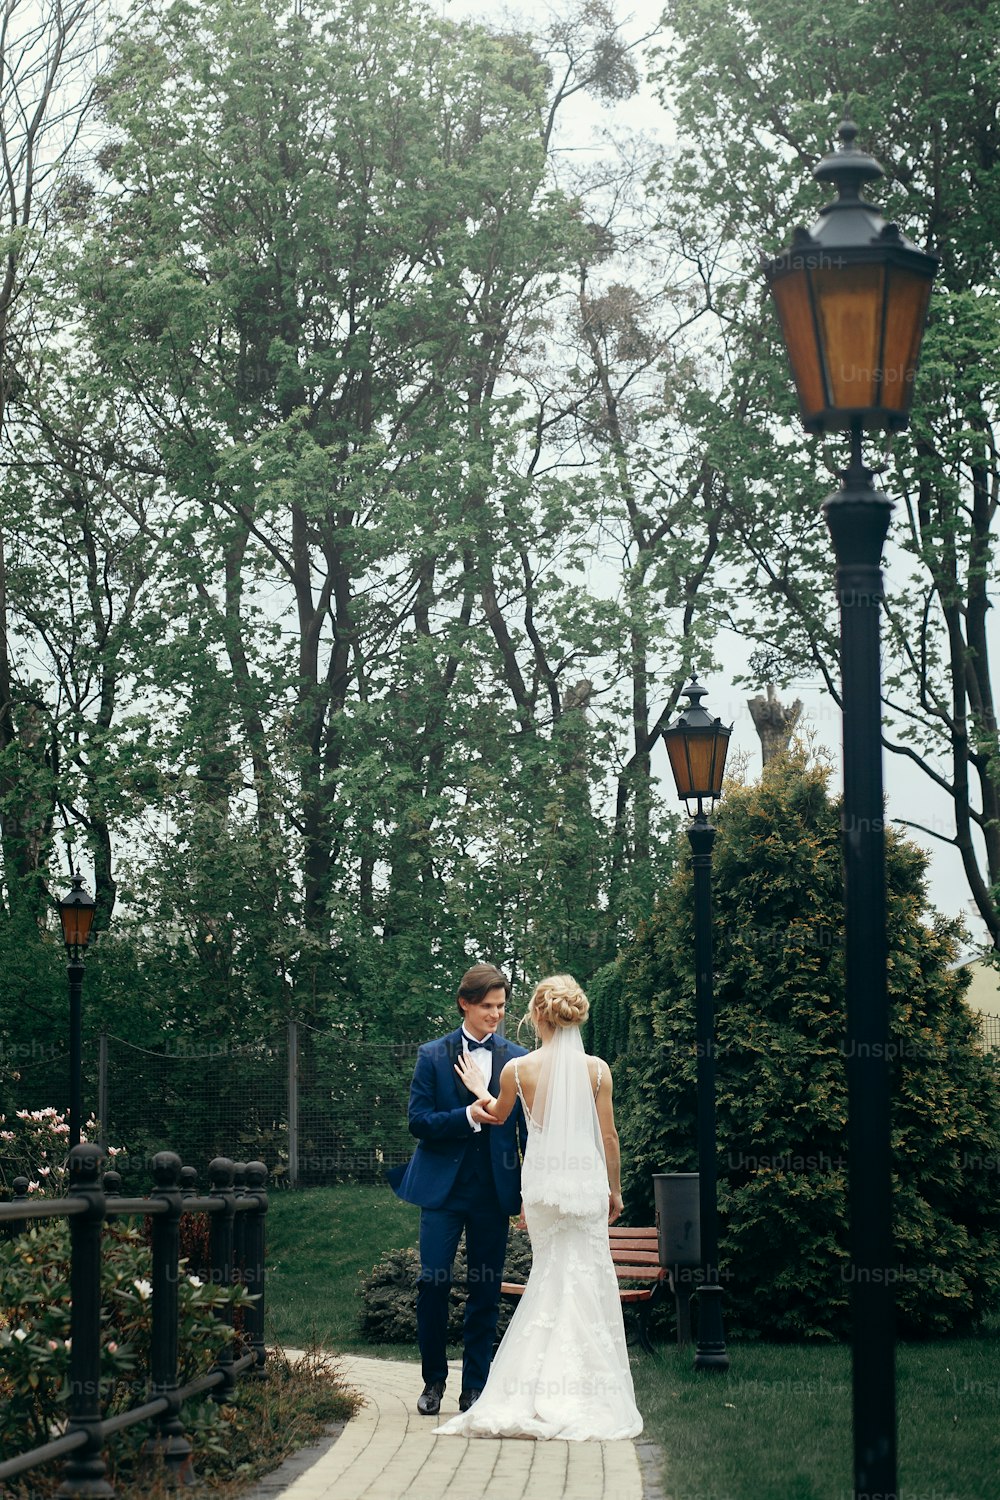 공원에서 춤을 추는 세련된 신부와 신랑.  행복한 럭셔리 웨딩 커플이 나무 사이를 걷고 웃고 있다. 야외 리셉션에서 파란색 정장을 입은 남자와 흰색 드레스를 입은 여자